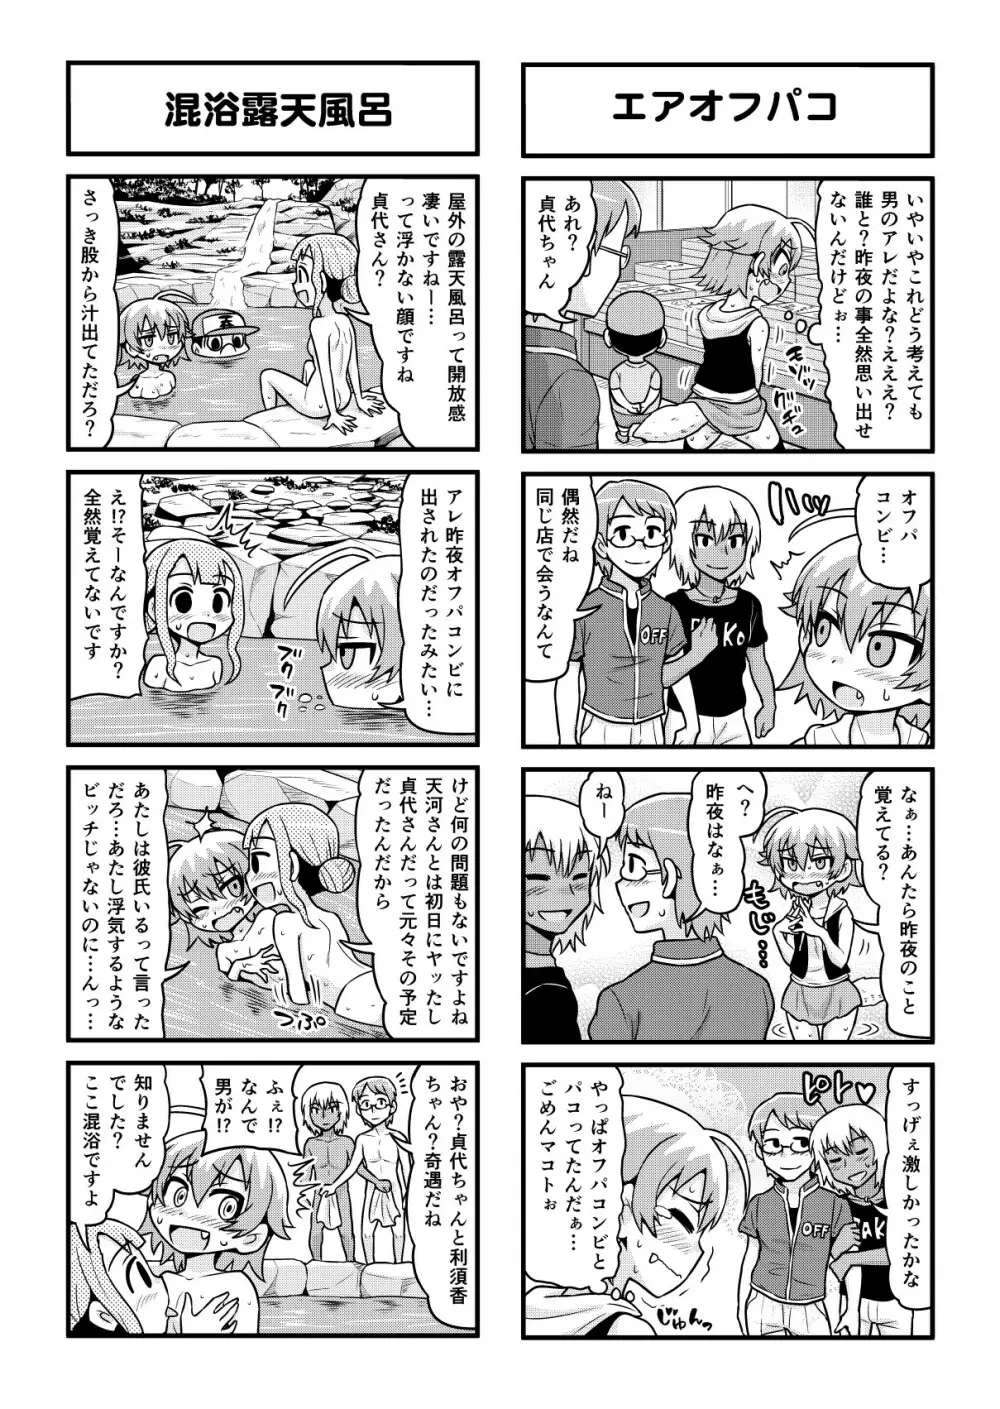 のんきBOY 1-48 - page322